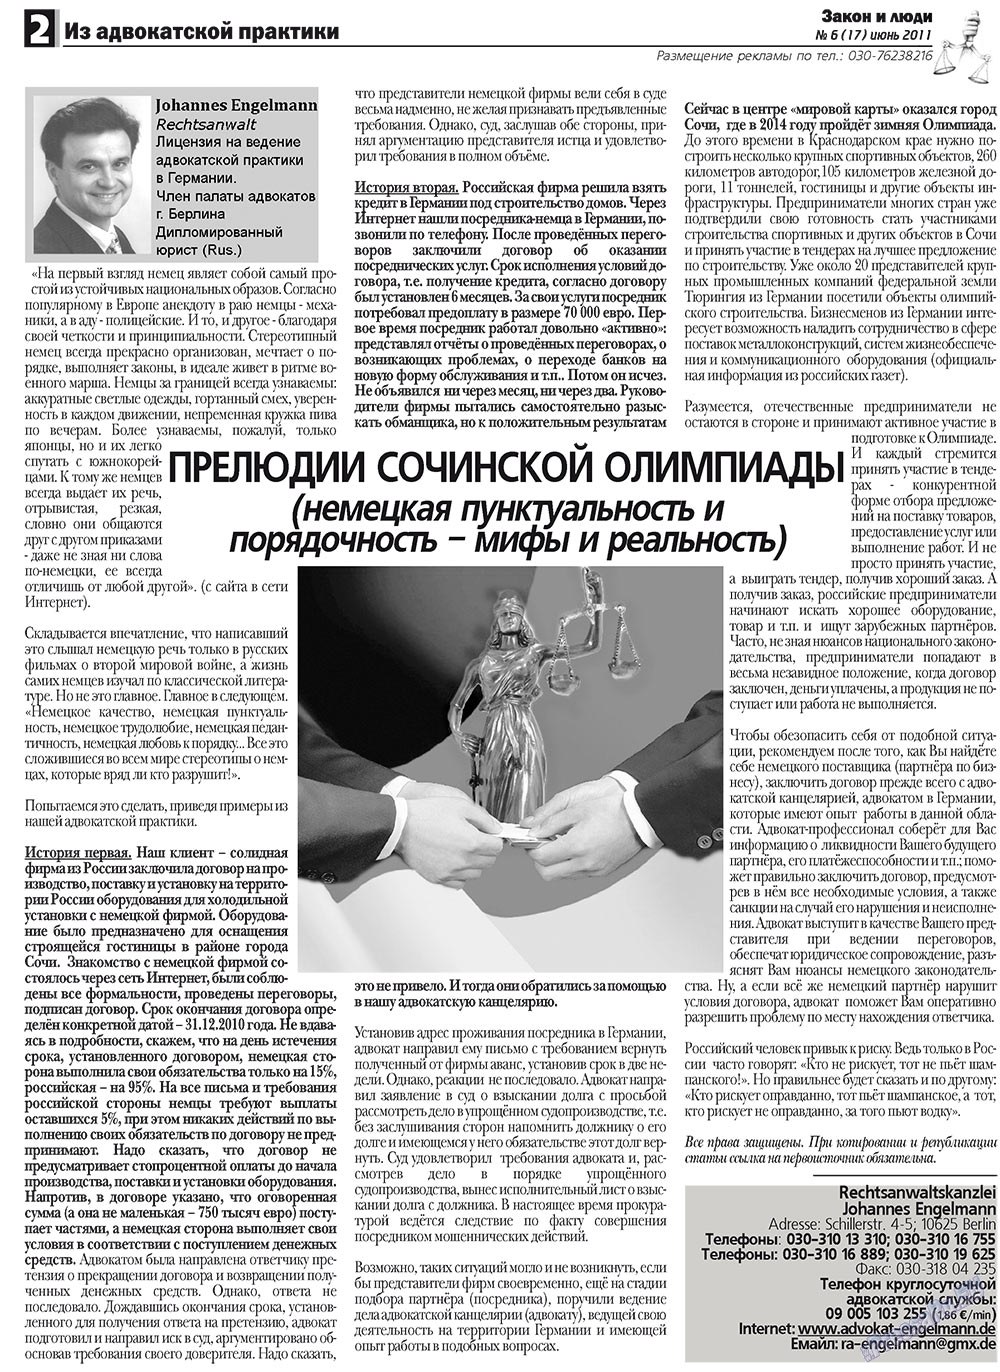 Закон и люди, газета. 2011 №6 стр.2